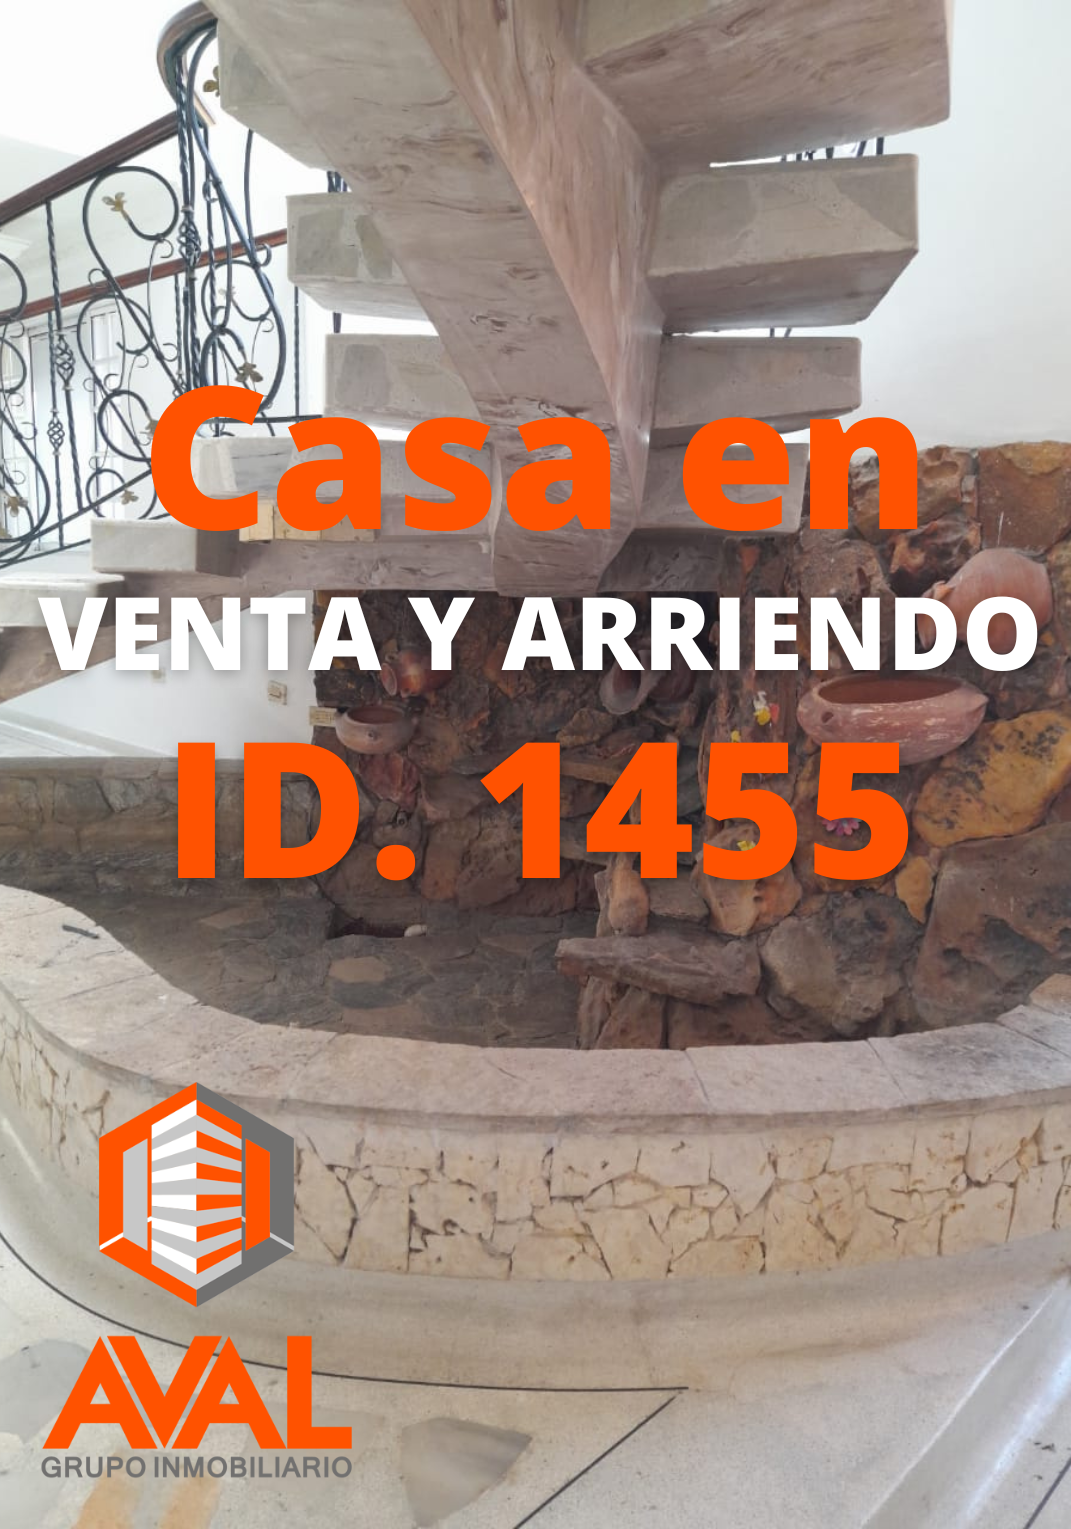 CASA EN VENTA Y ARRIENDO, SAMANES DE LA ARQUERIA ID 1455